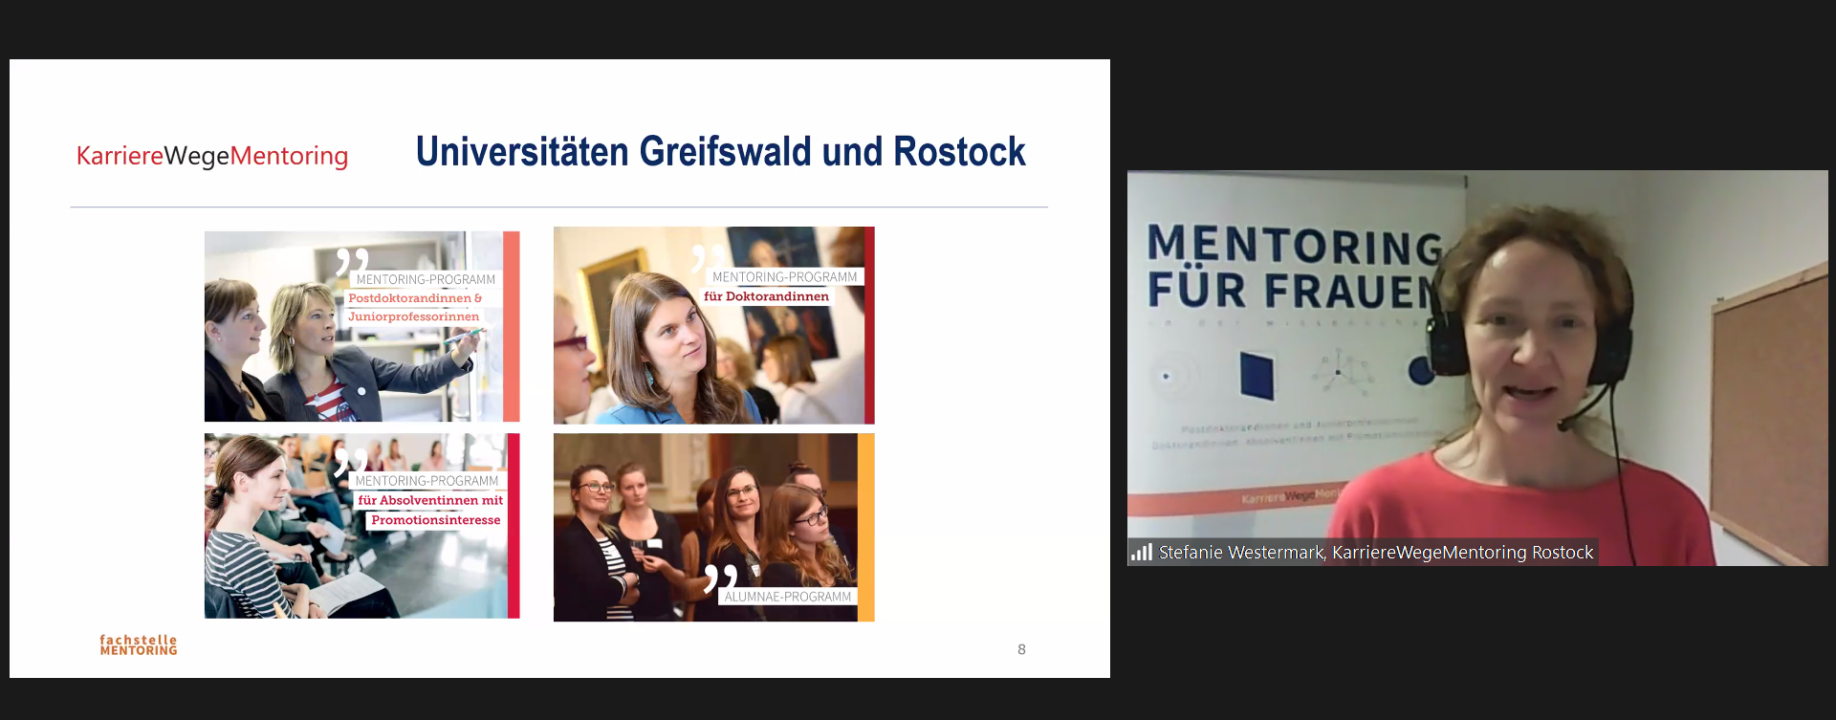 Bild aus dem Vortrag: Folie von Karriere Wege Mentoring von den Universitäten Greifswald und Rostock mit Stefanie Westermark